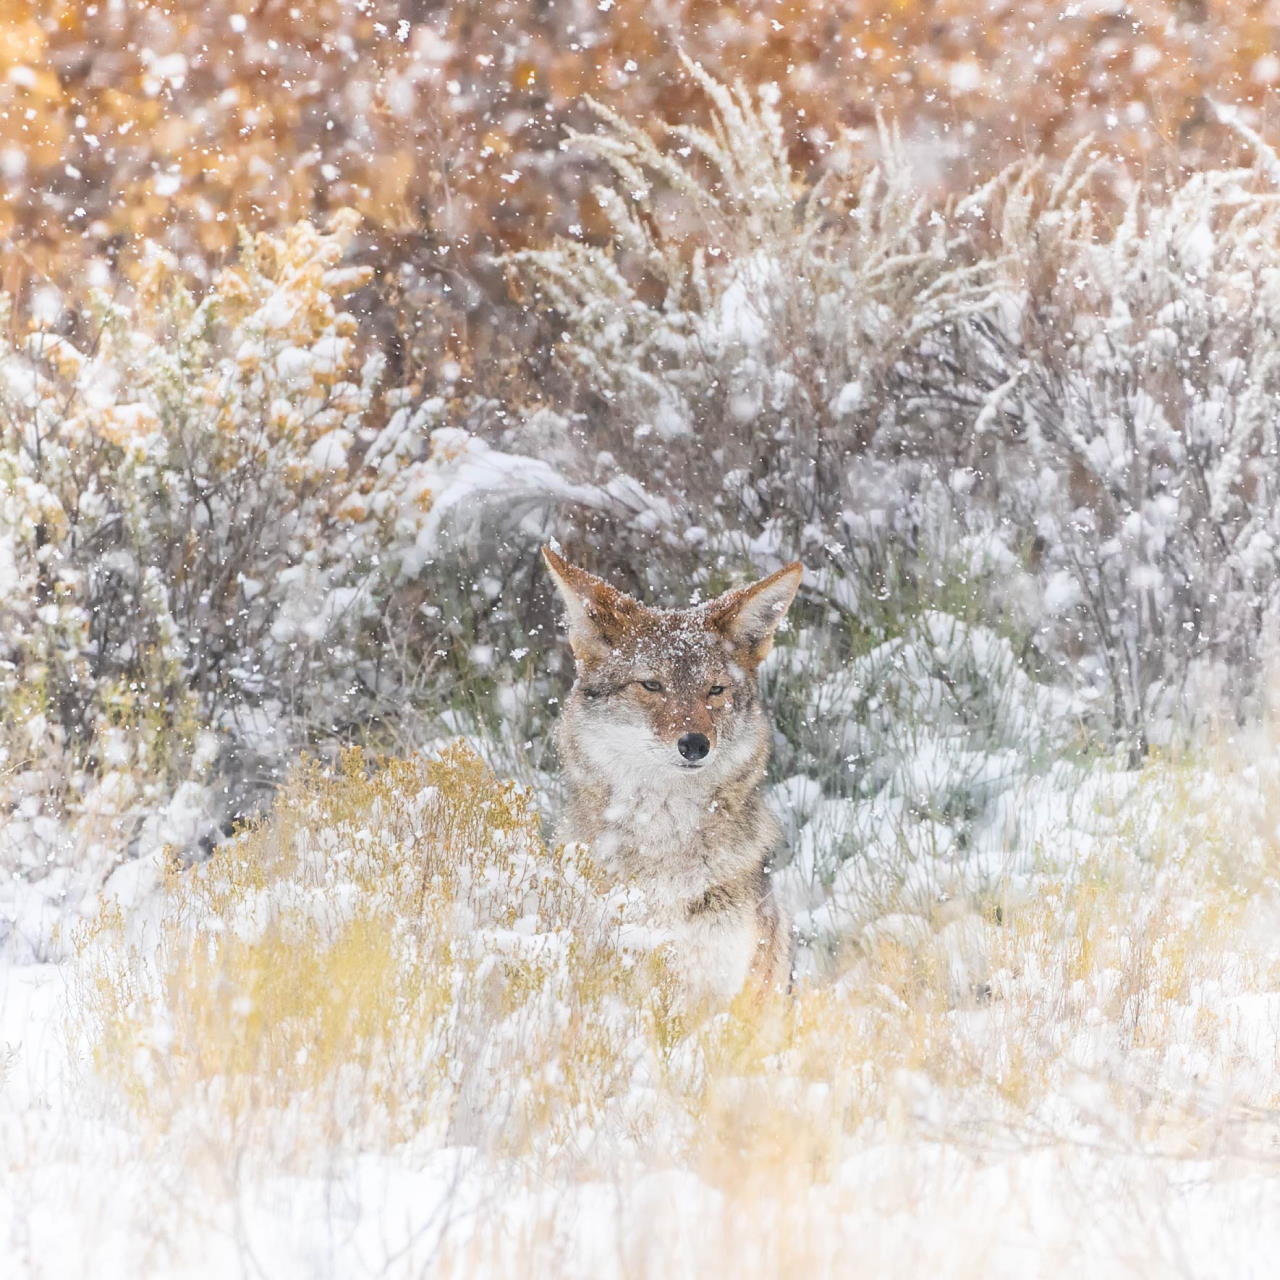 Койот (Canis latrans) у снігу. Pam Dorner